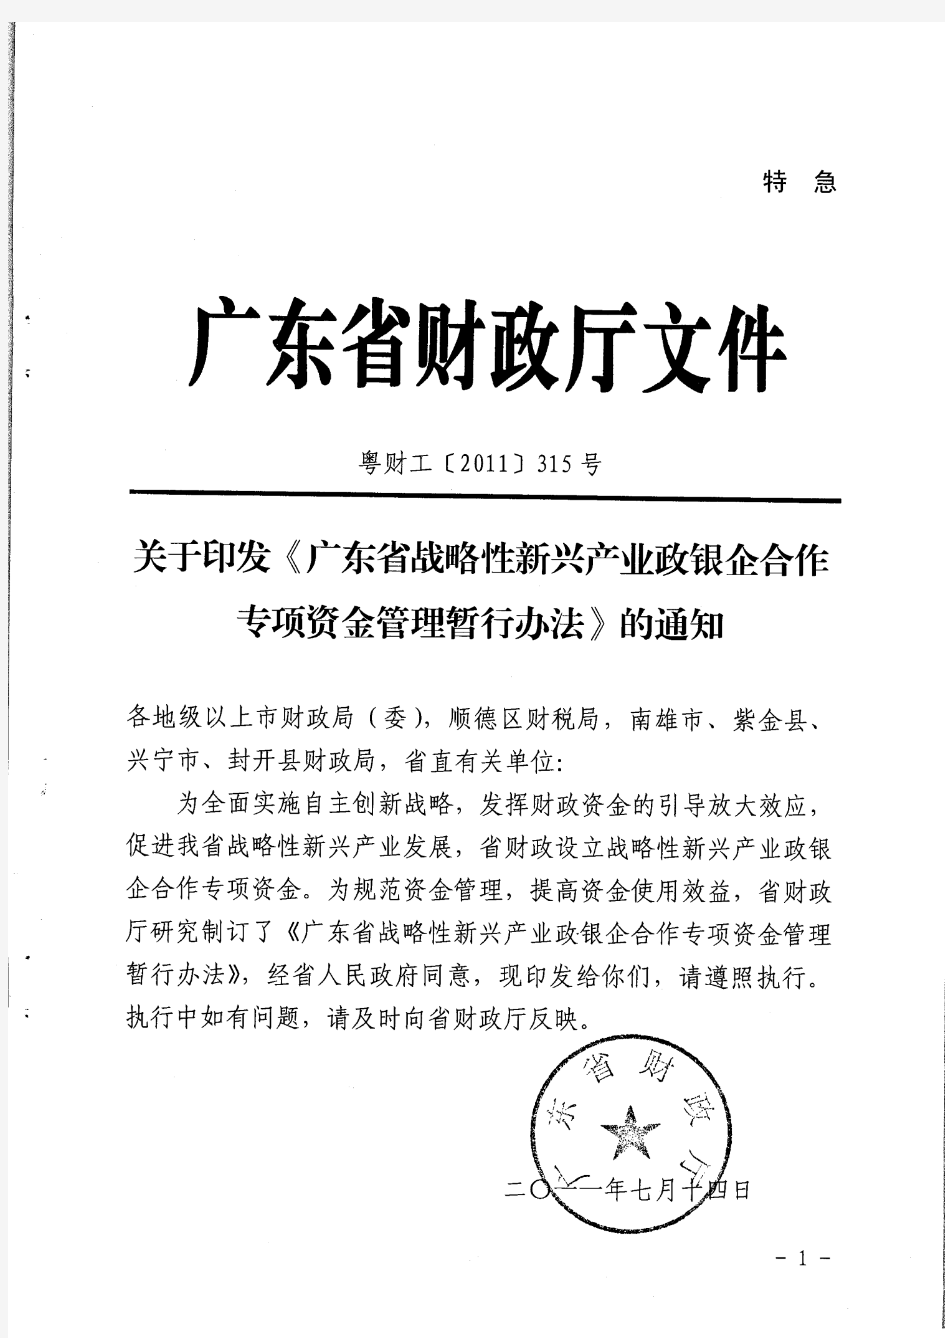 广东省战略性新兴产业政银企合作专项资金管理暂行办法